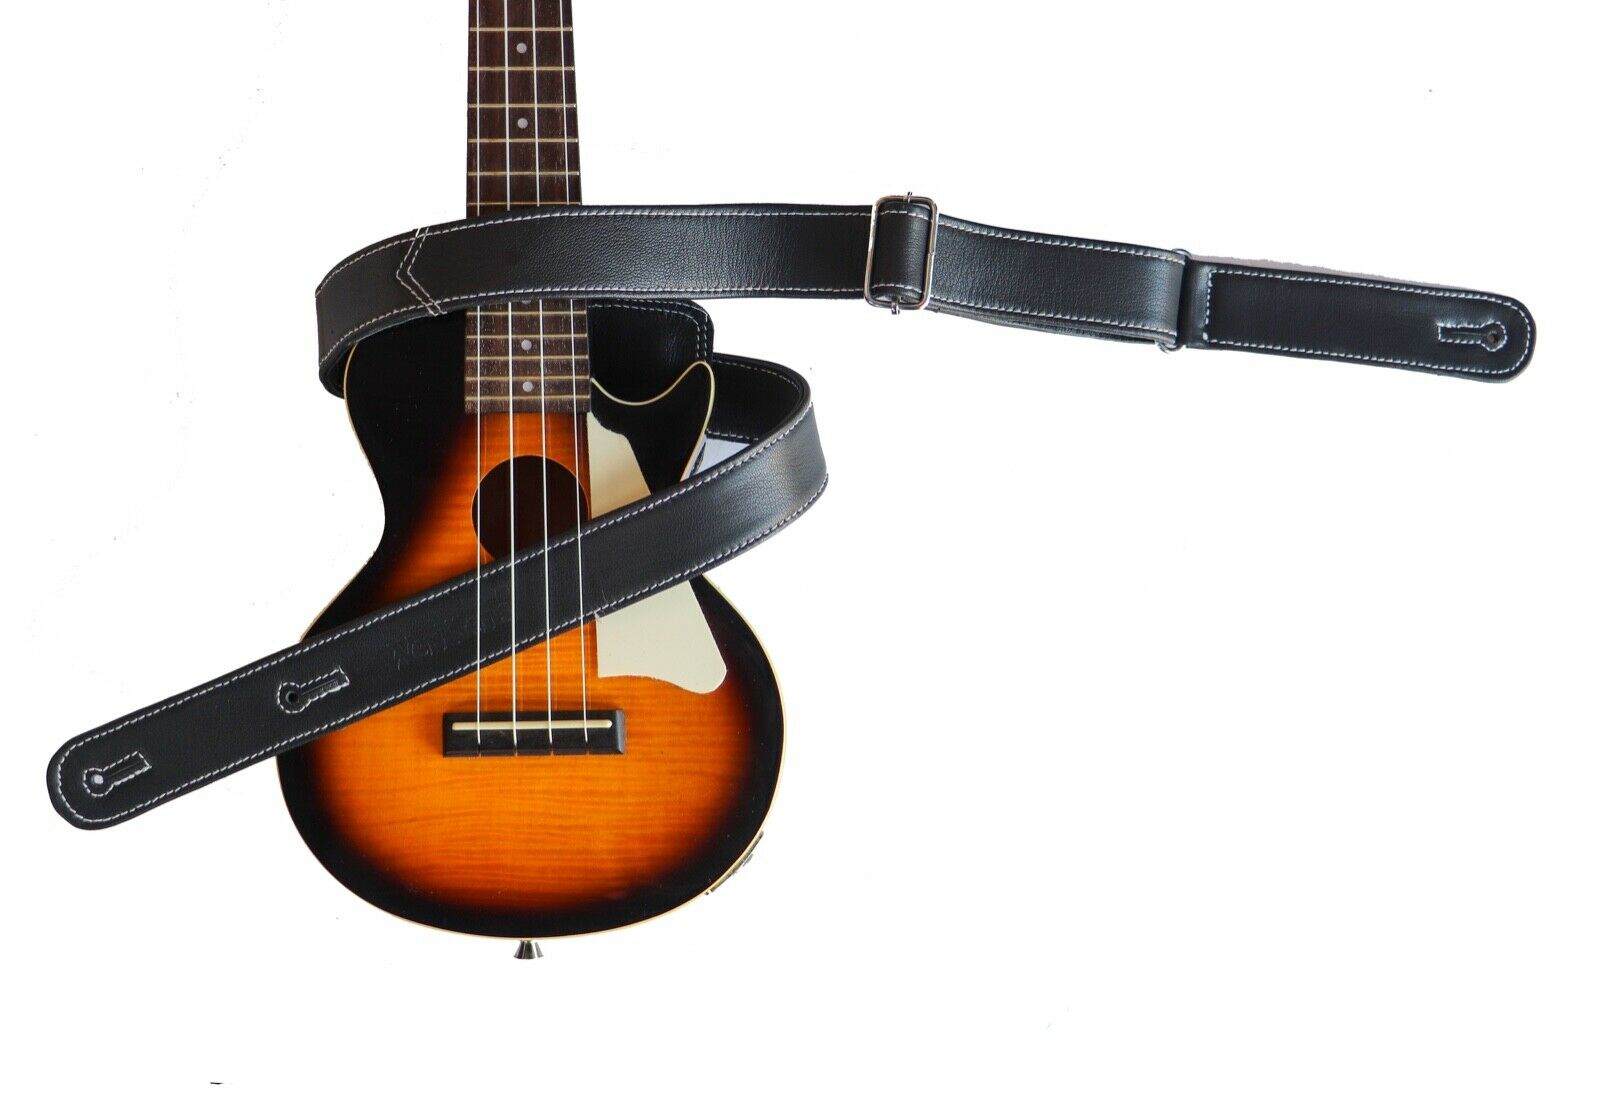  VICASKY 2pcs Adjustable Guitar Strap Banjo Shoulder